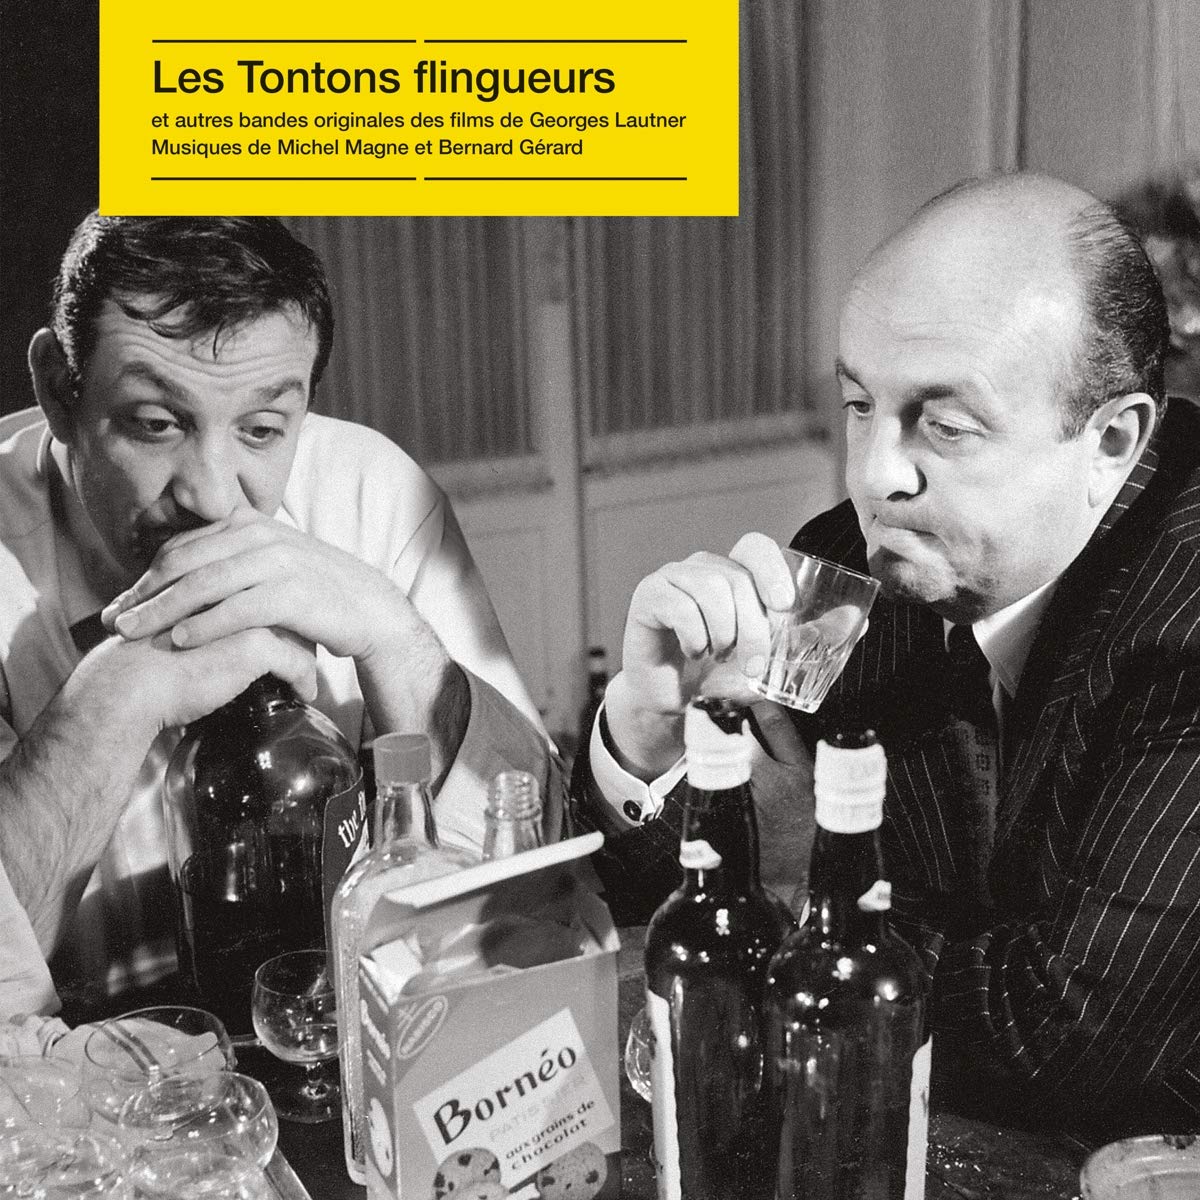 MICHEL-MAGNE-Les-Tontons-Flingueurs-Vinyl-LP-black